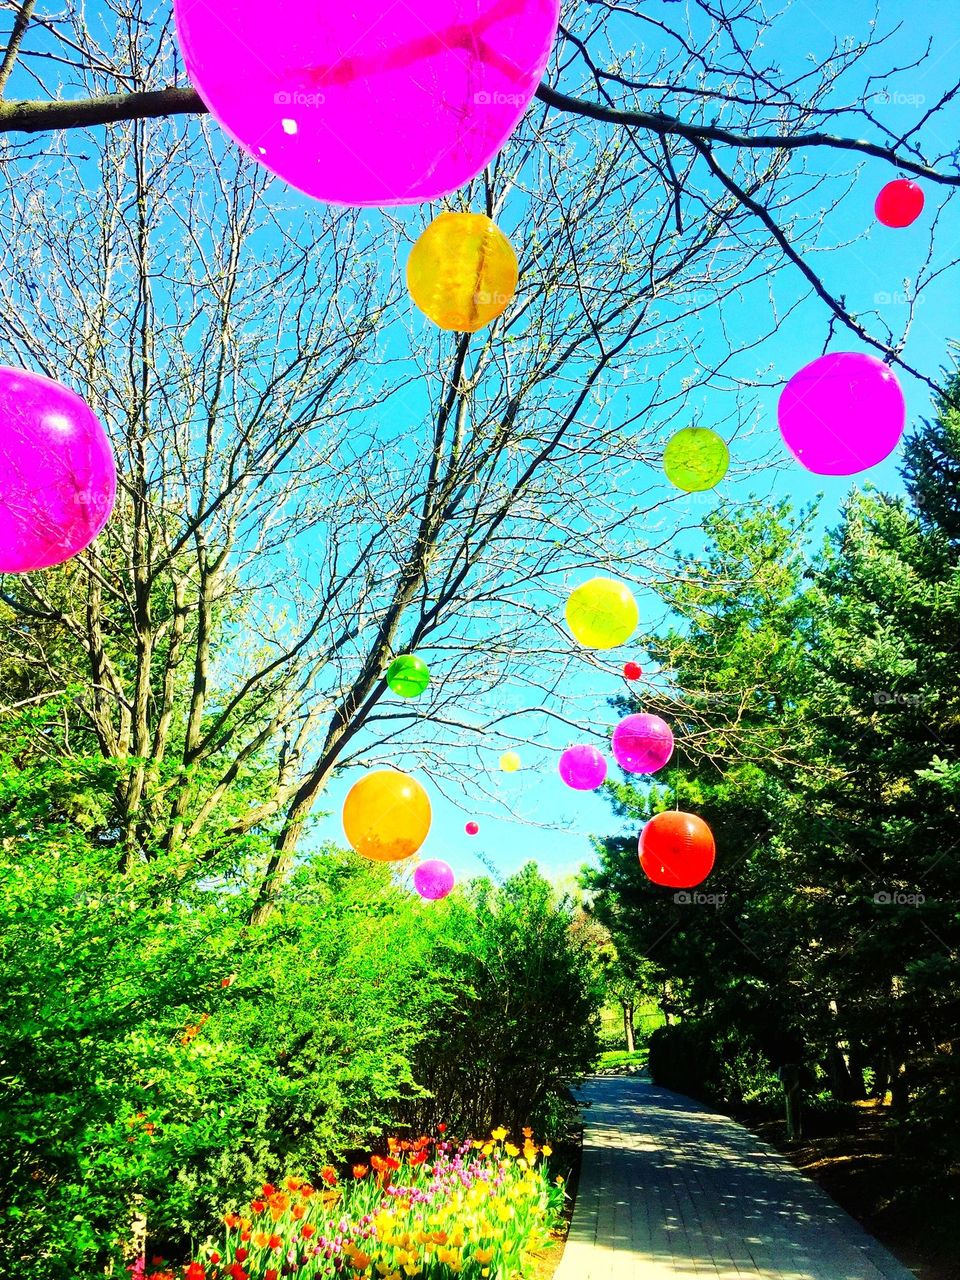 Helium balloons